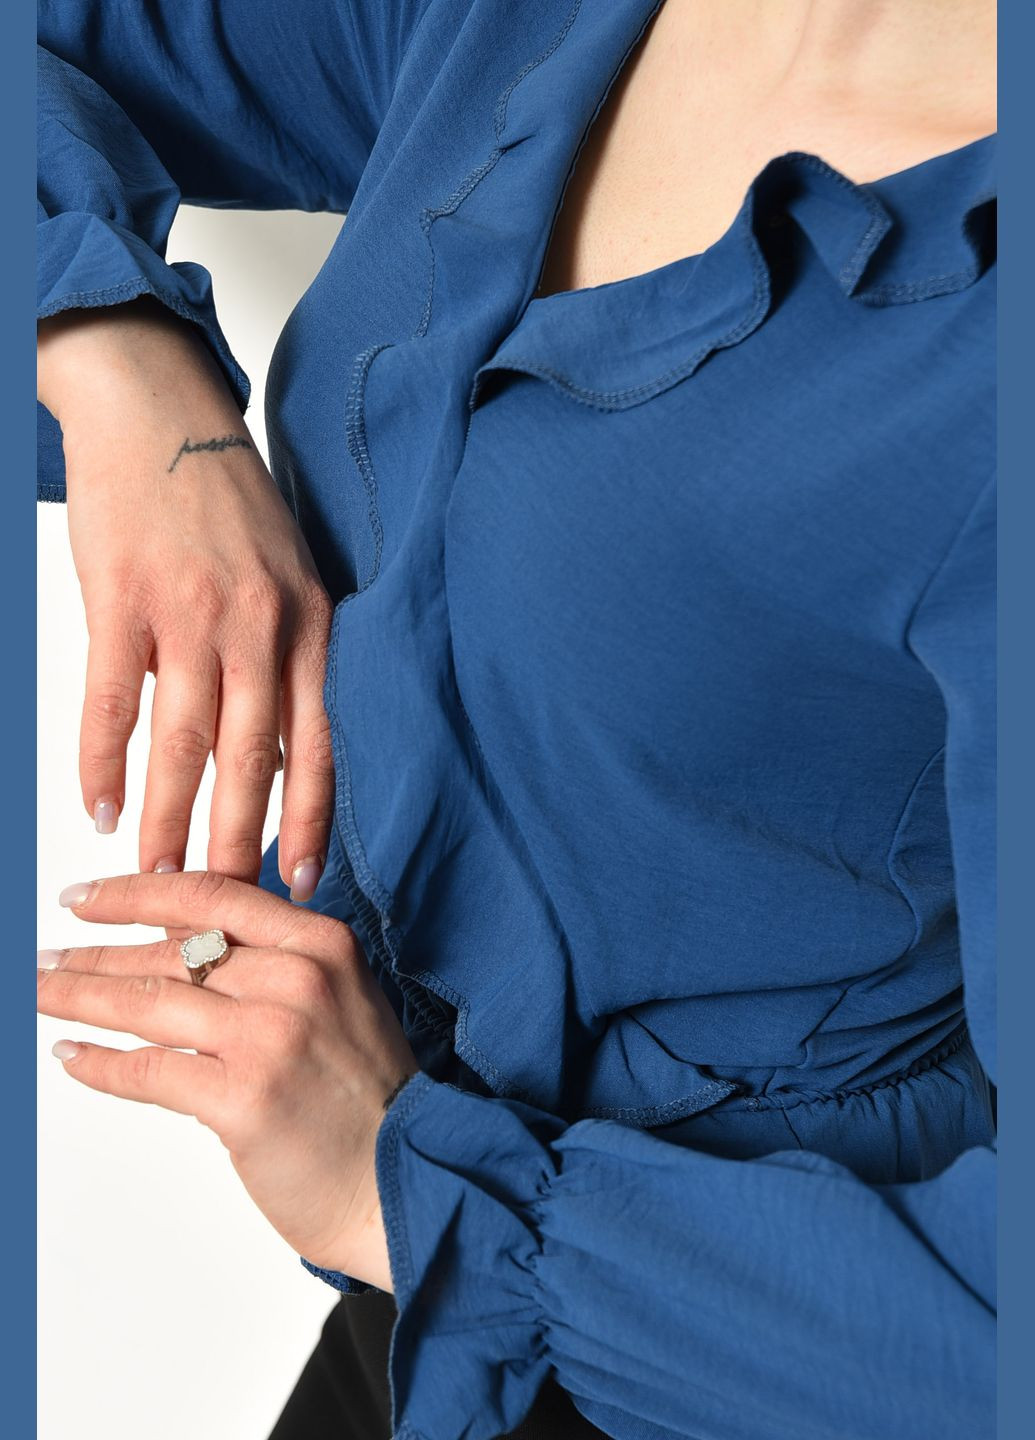 Синя демісезонна блуза жіноча однотонна синього кольору з баскою Let's Shop